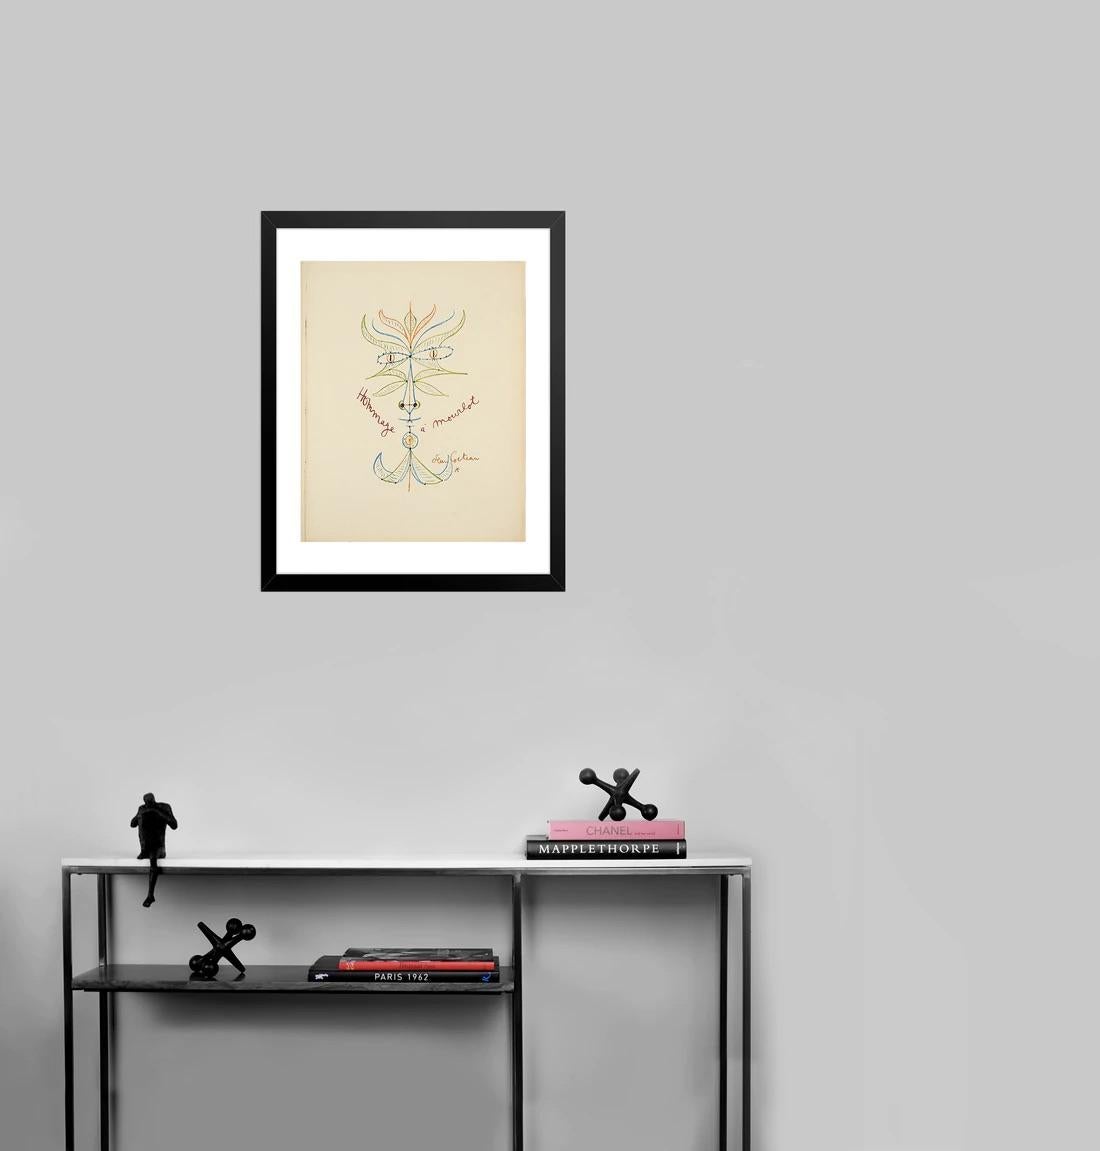 Künstler: Jean Cocteau

Medium: Original-Lithographie, 1956 - 1975

Abmessungen: 26 x 20,75 Zoll, 66 x 52,7 cm 

Arches Papier - Perfekter Zustand A+

Diese seltene Original-Lithographie von Jean Cocteau in sechs Farben aus dem Jahr 1956 ist im